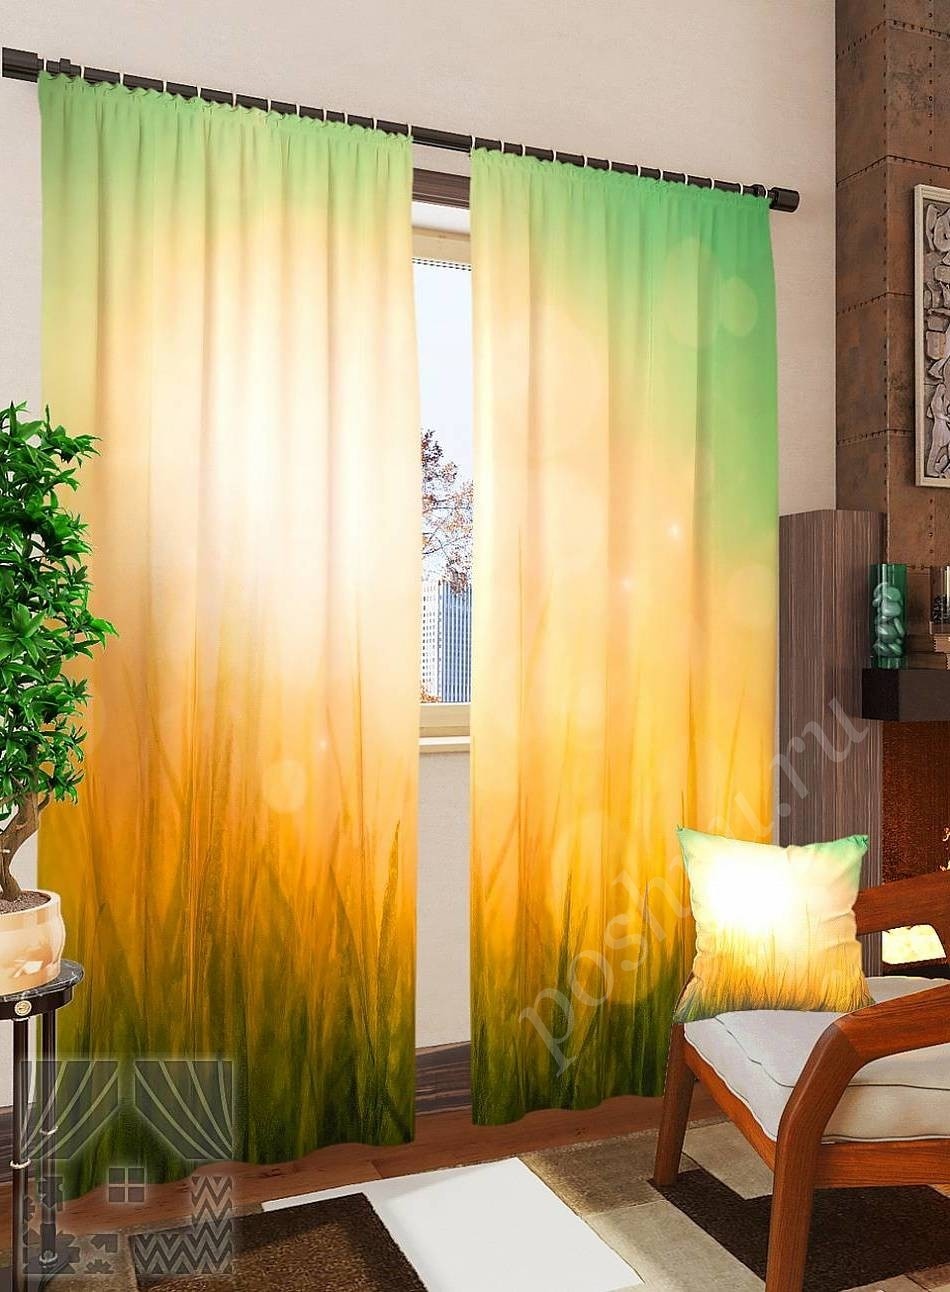 Комплект готовых фото штор с изображением солнца над лугом для гостиной или спальни